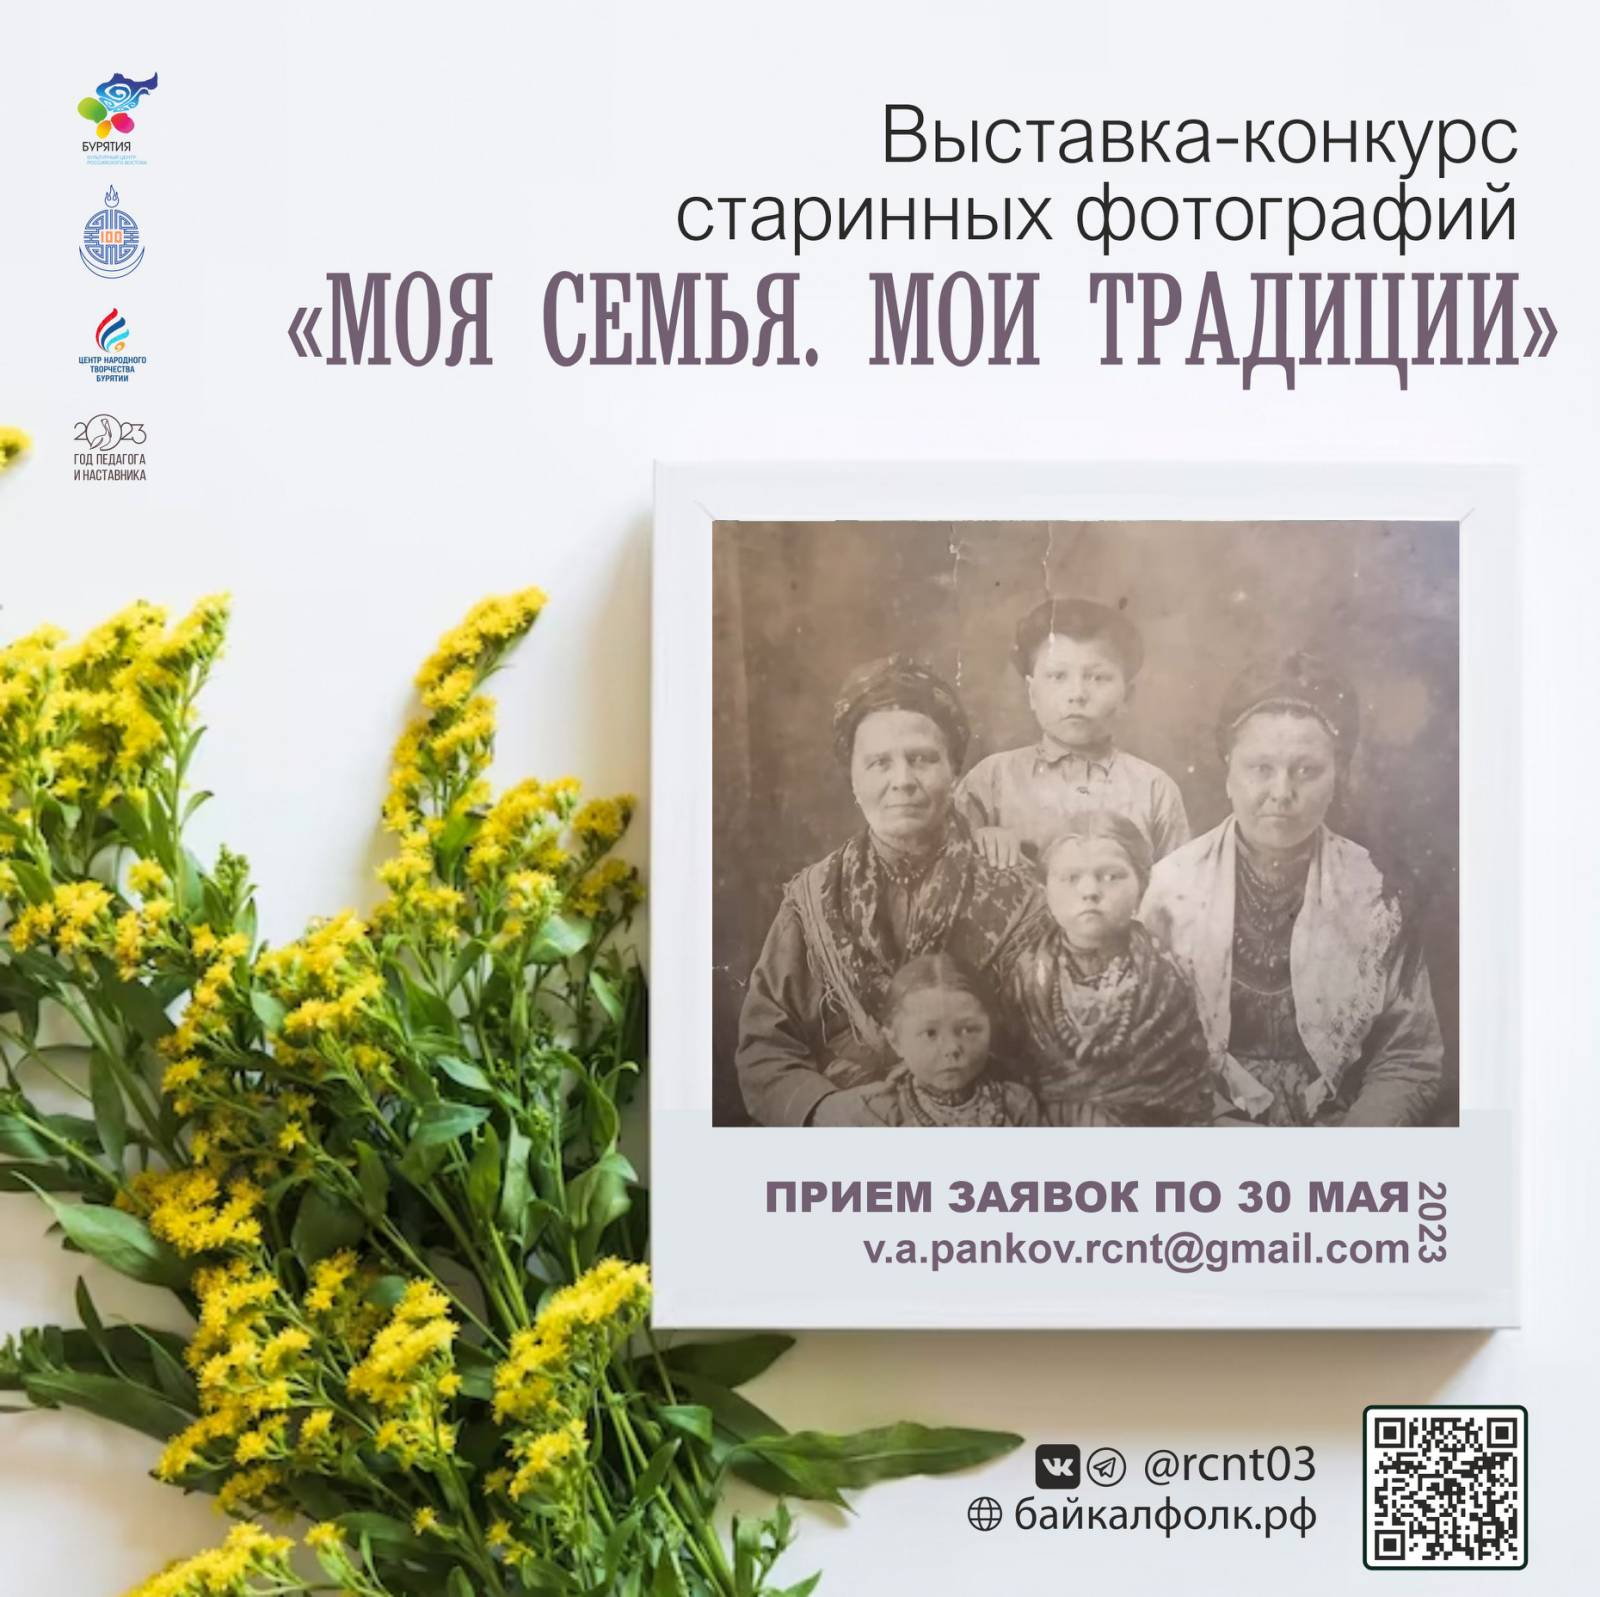 Выставка-конкурс старинных фотографий «Моя семья. Мои традиции»